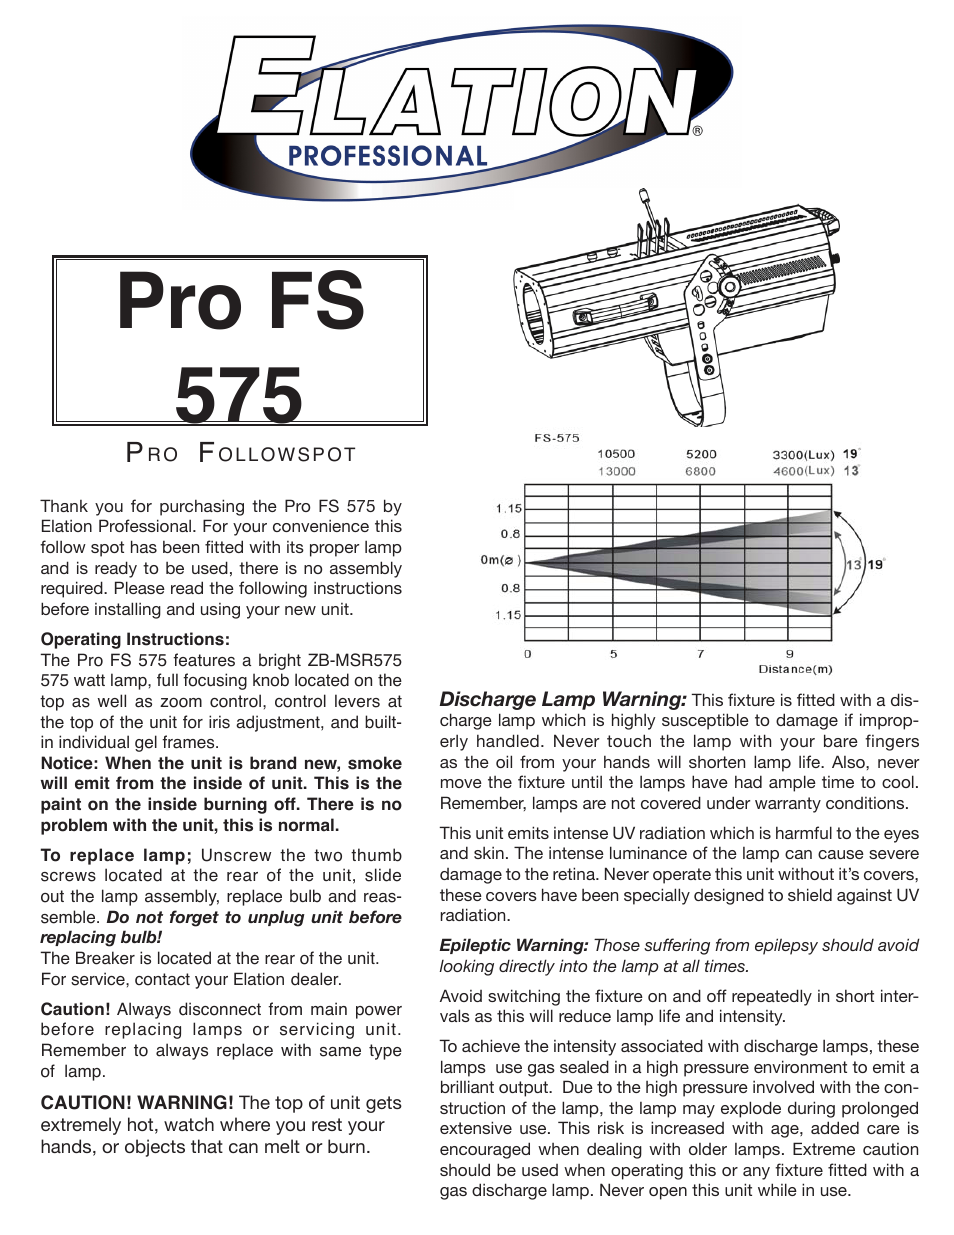 Pro FS 575